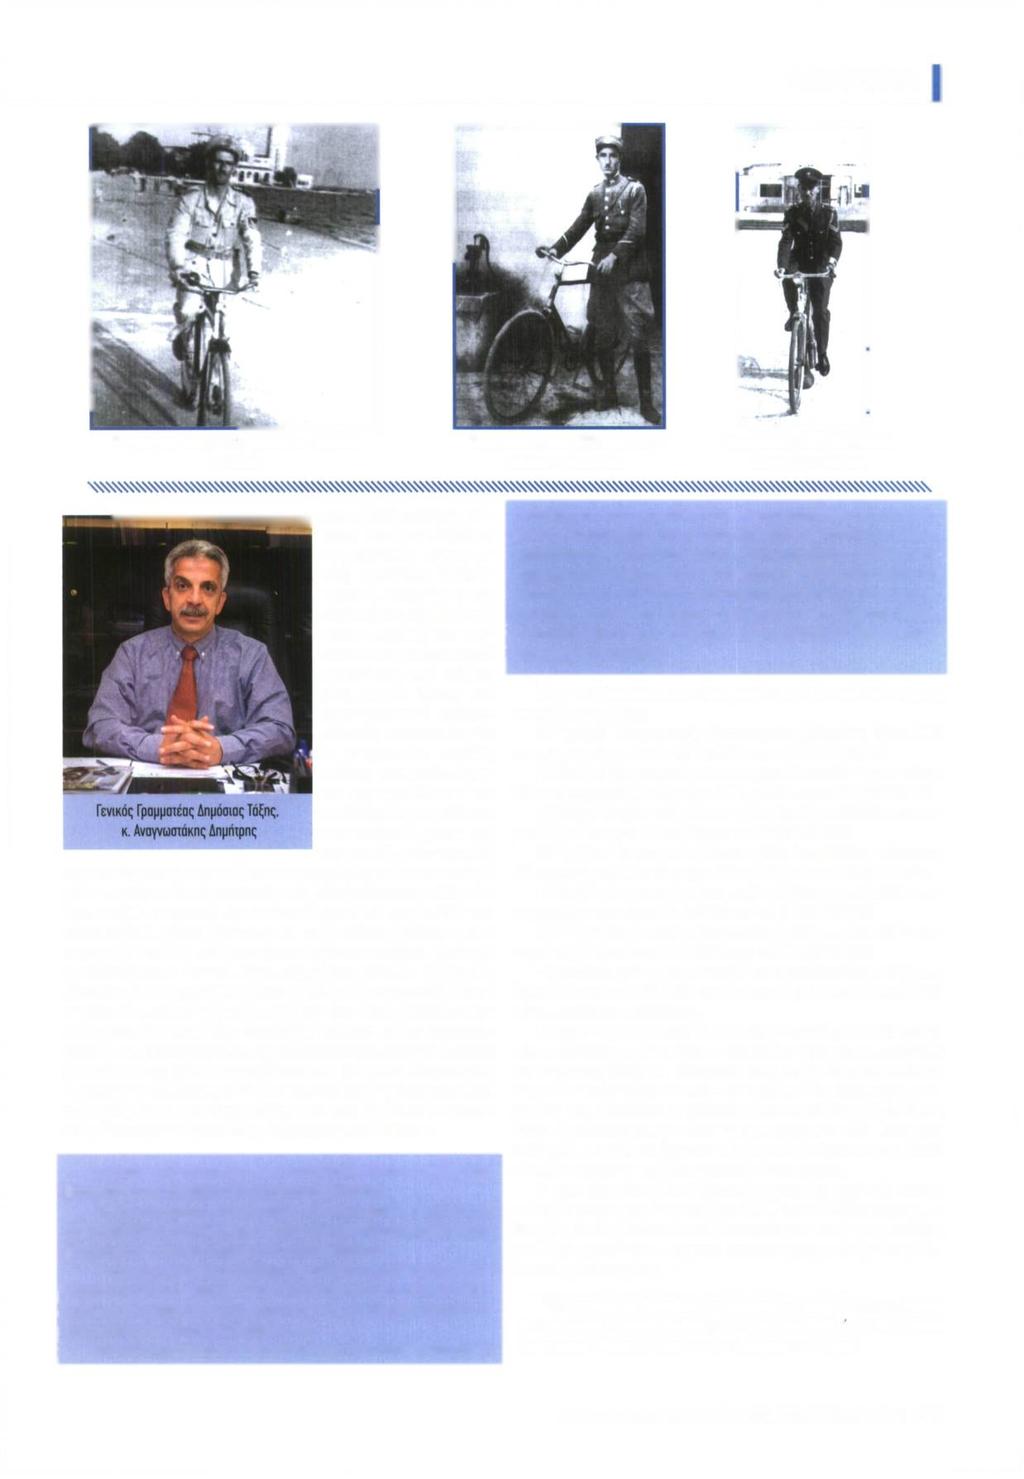 ΑΦΙΕΡΩΜΑ Ενωμοτάρχης έτους 1949 περίπολοί στην παραλία του Βόλου Χωροφύλακας έτους 1925 ηεριηολεί με ποδήλατο στην Κορδίτοα Χωροφύλακας έτους 1952 εκτελεί υπηρεσία με ποδήλατο και υψηλή